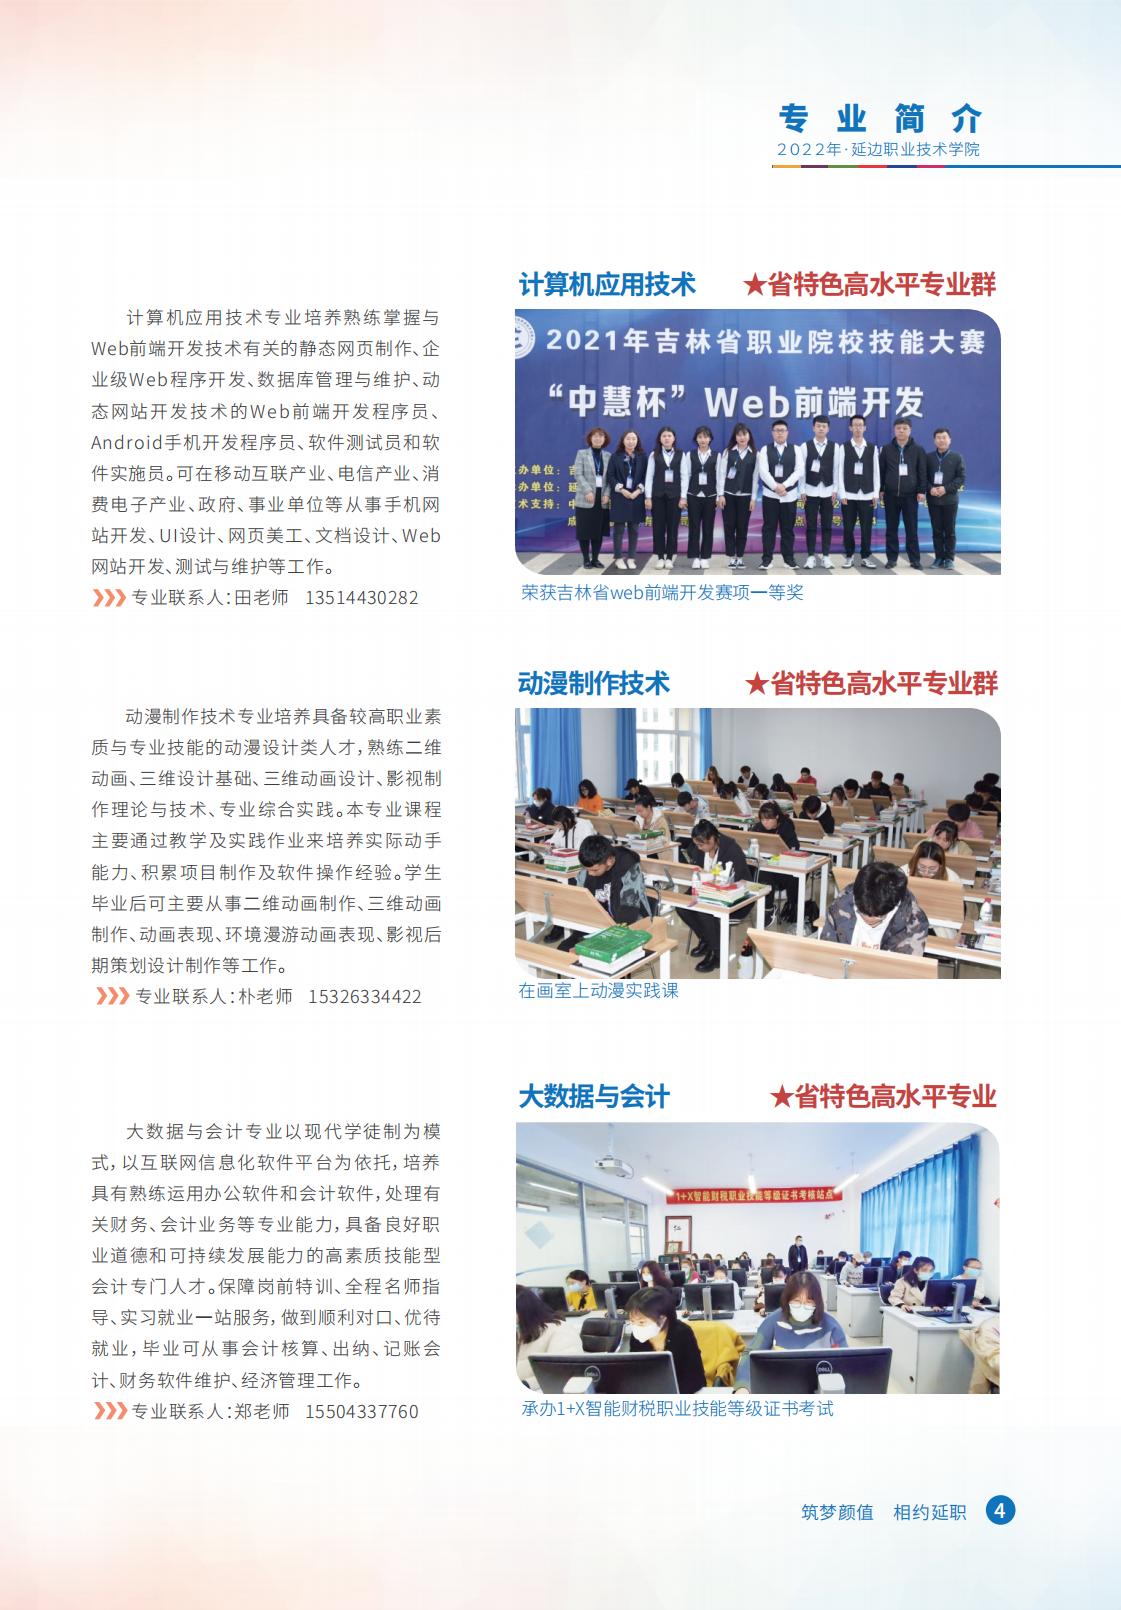 延边职业技术学院2022报考指南 预览版_04.jpg